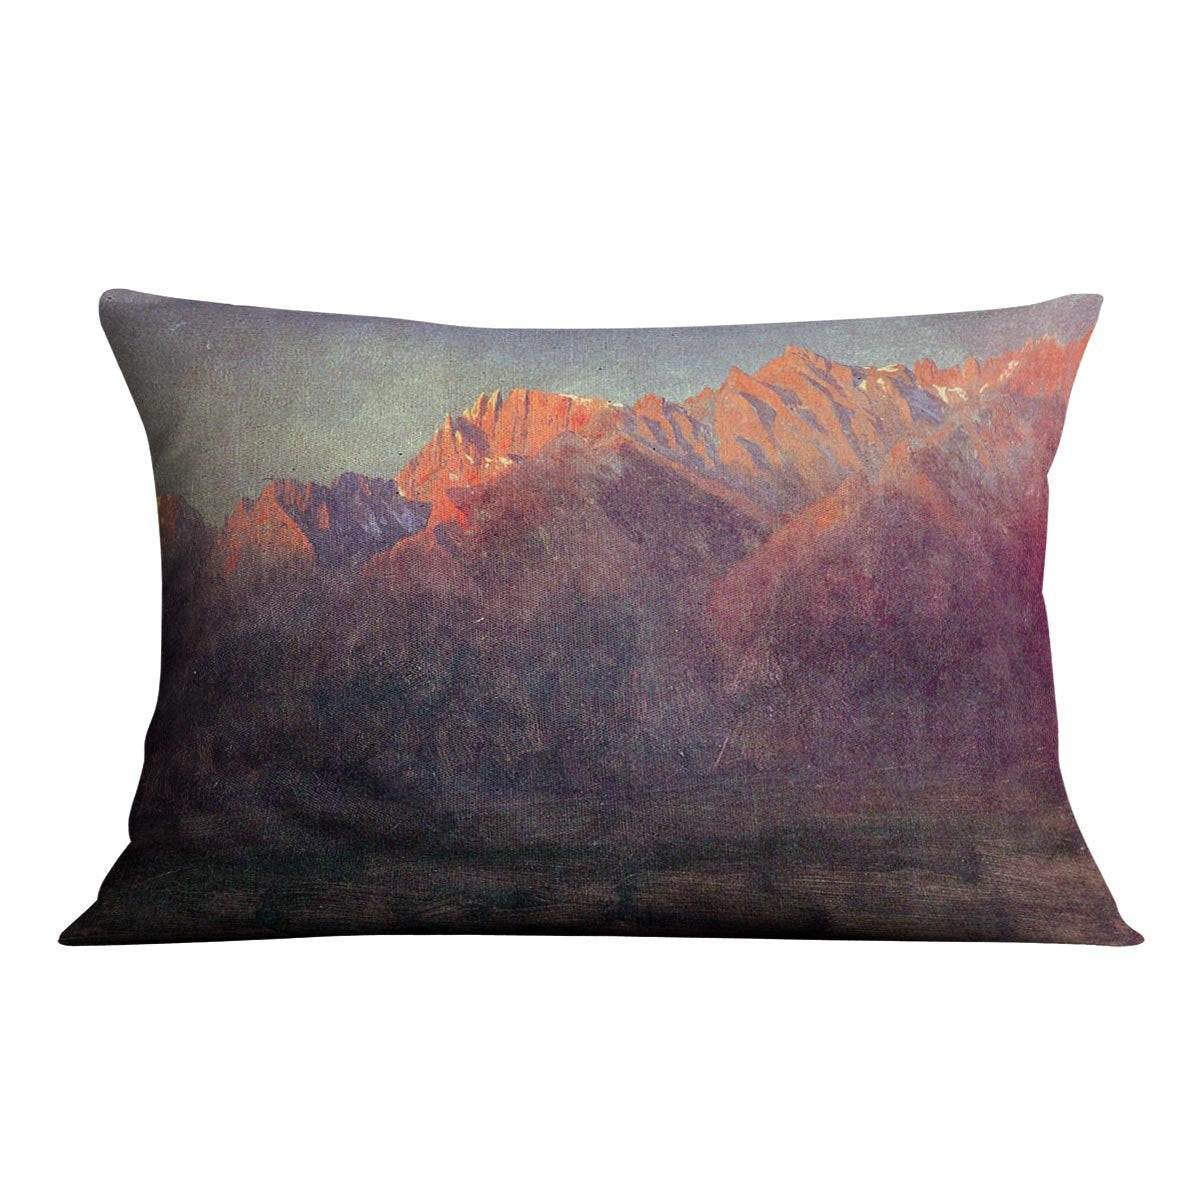 Sunrise in the Sierras by Bierstadt Cushion - Canvas Art Rocks - 4